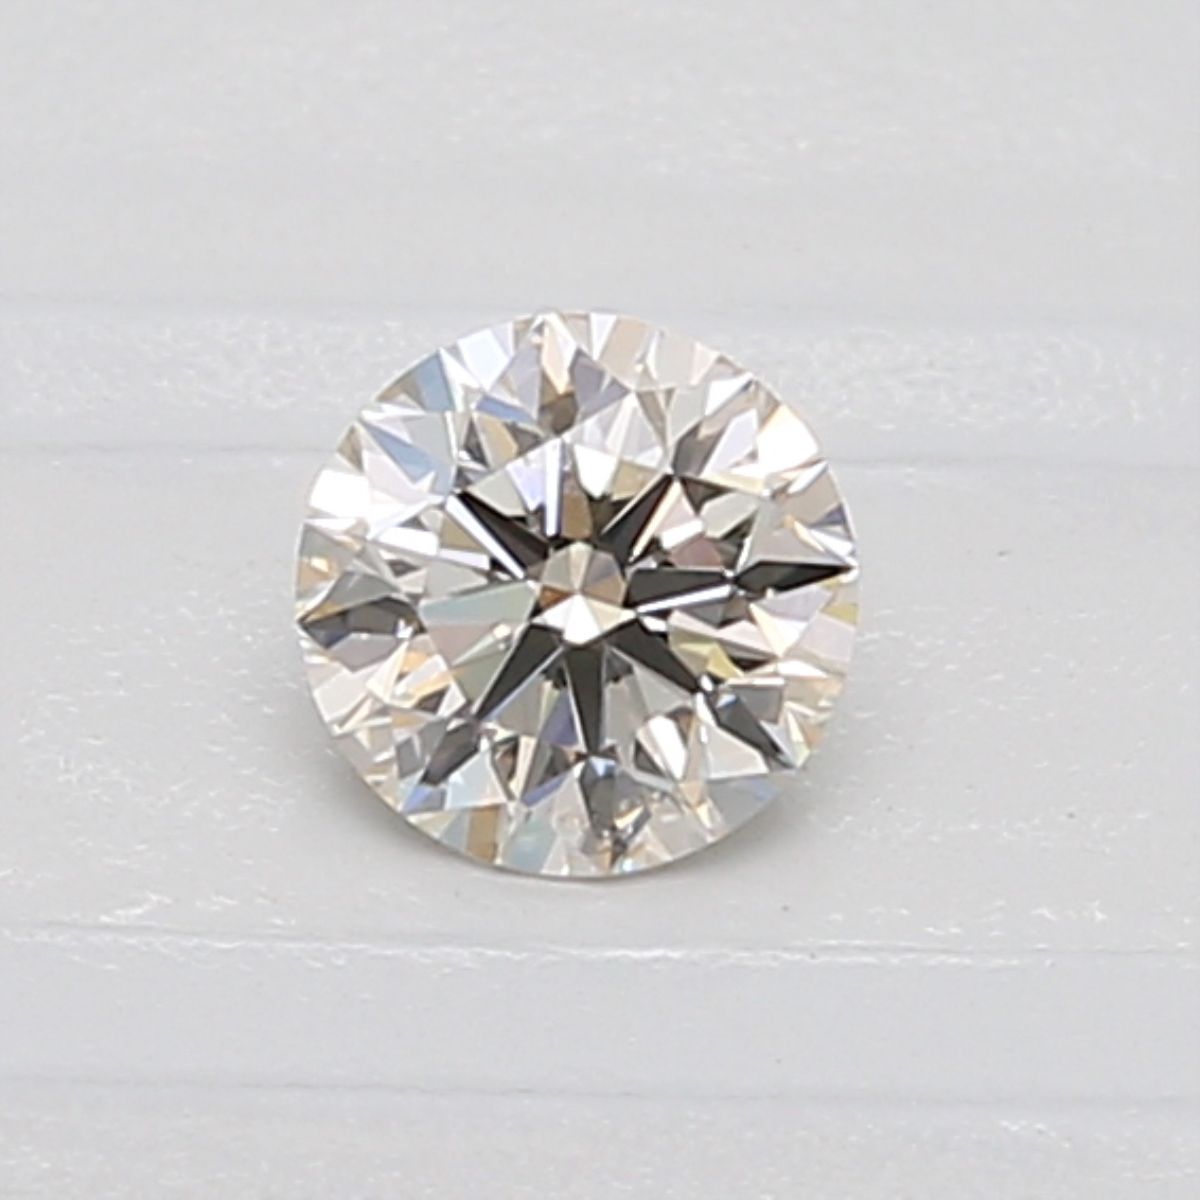 Diamant Rond 0.37 ct - Couleur K - Pureté VVS1